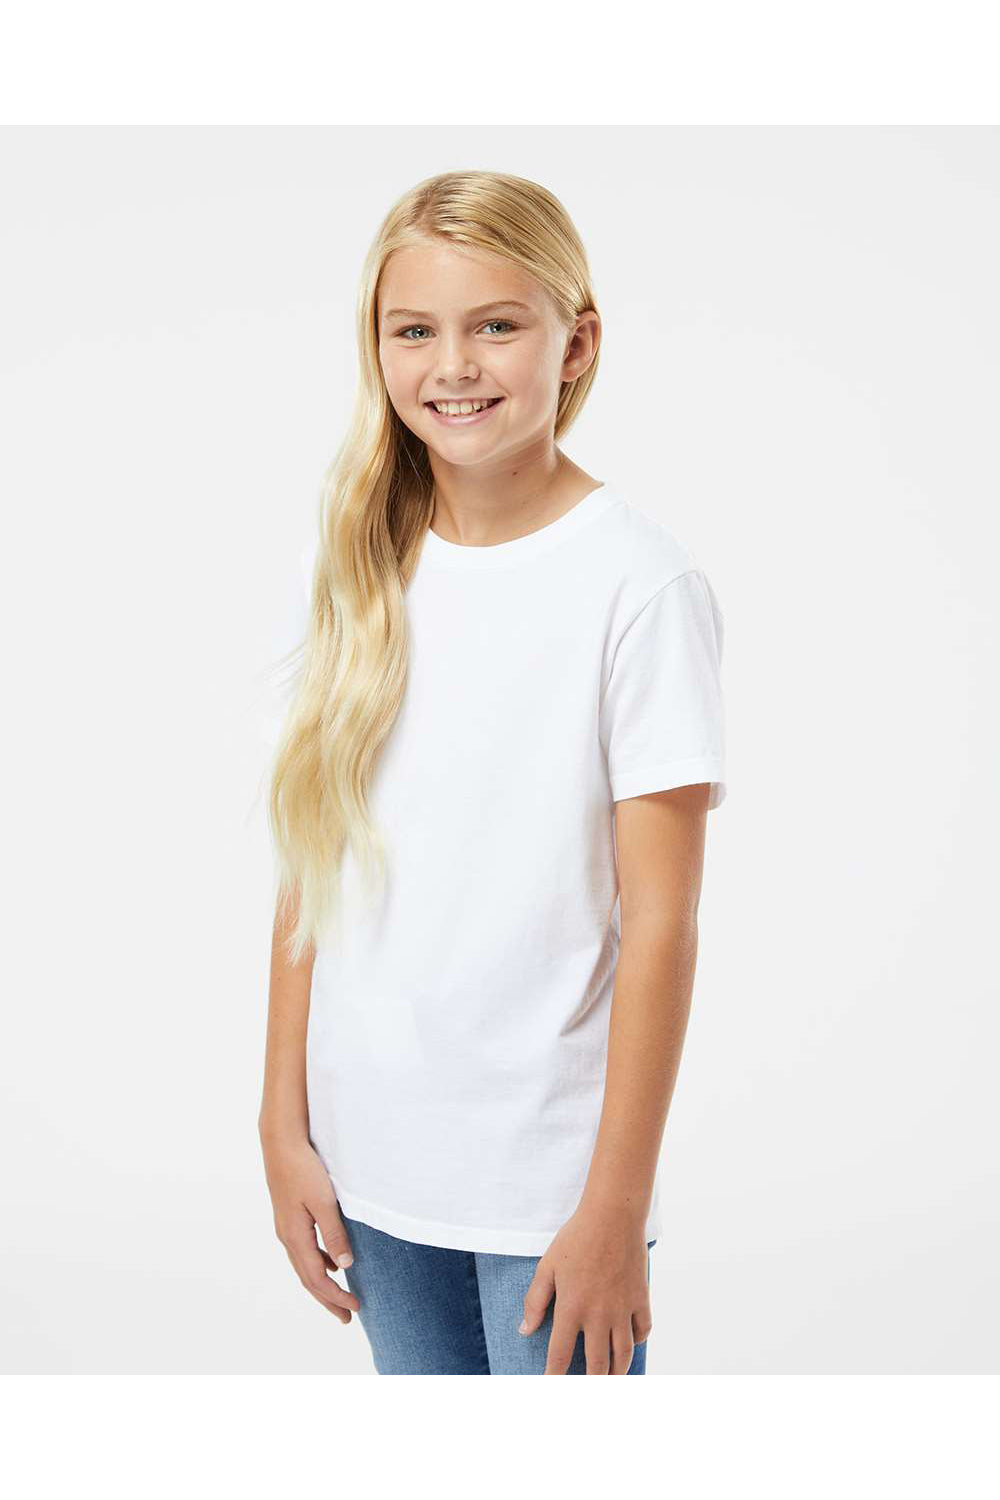 SoftShirts 402 Youth Organic Short Sleeve Crewneck T-Shirt White Model Side